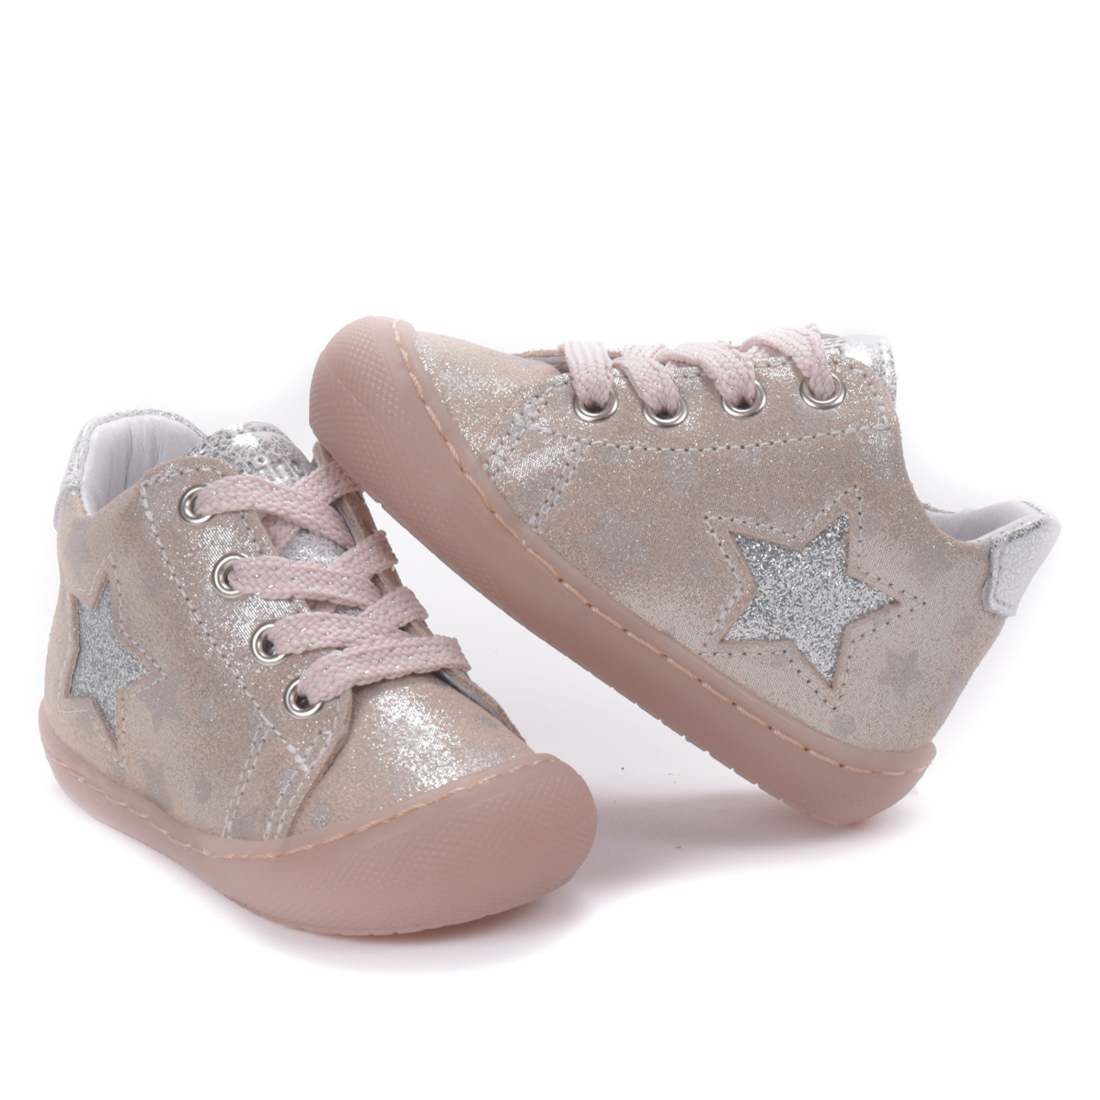 Chaussures bébé fille premiers pas - Startino rose et argent - Trottino